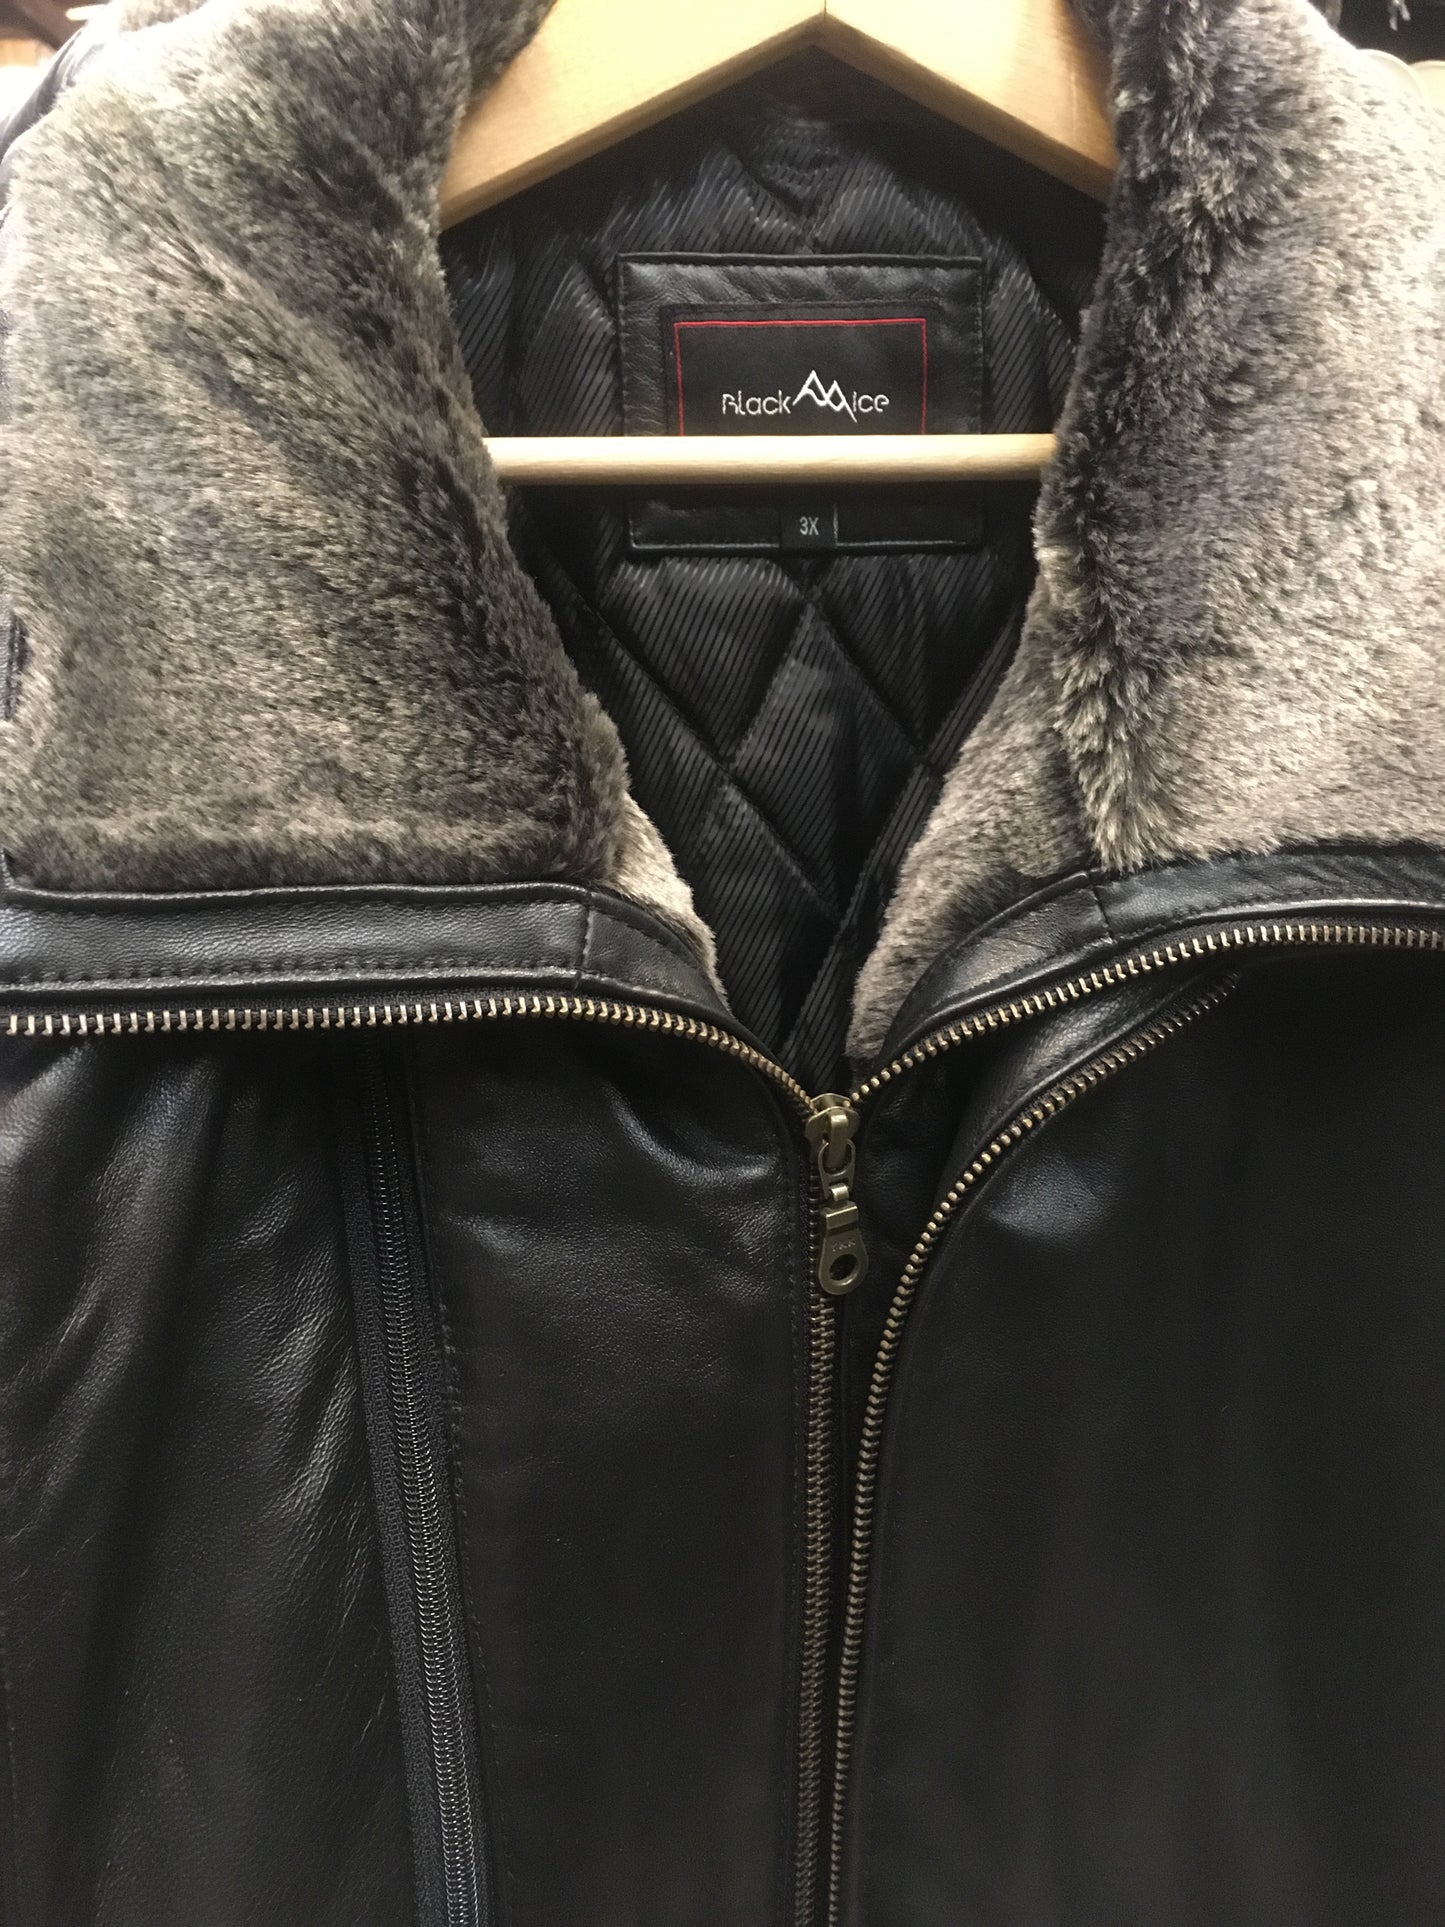 Black Ice Leather Jacket 5119